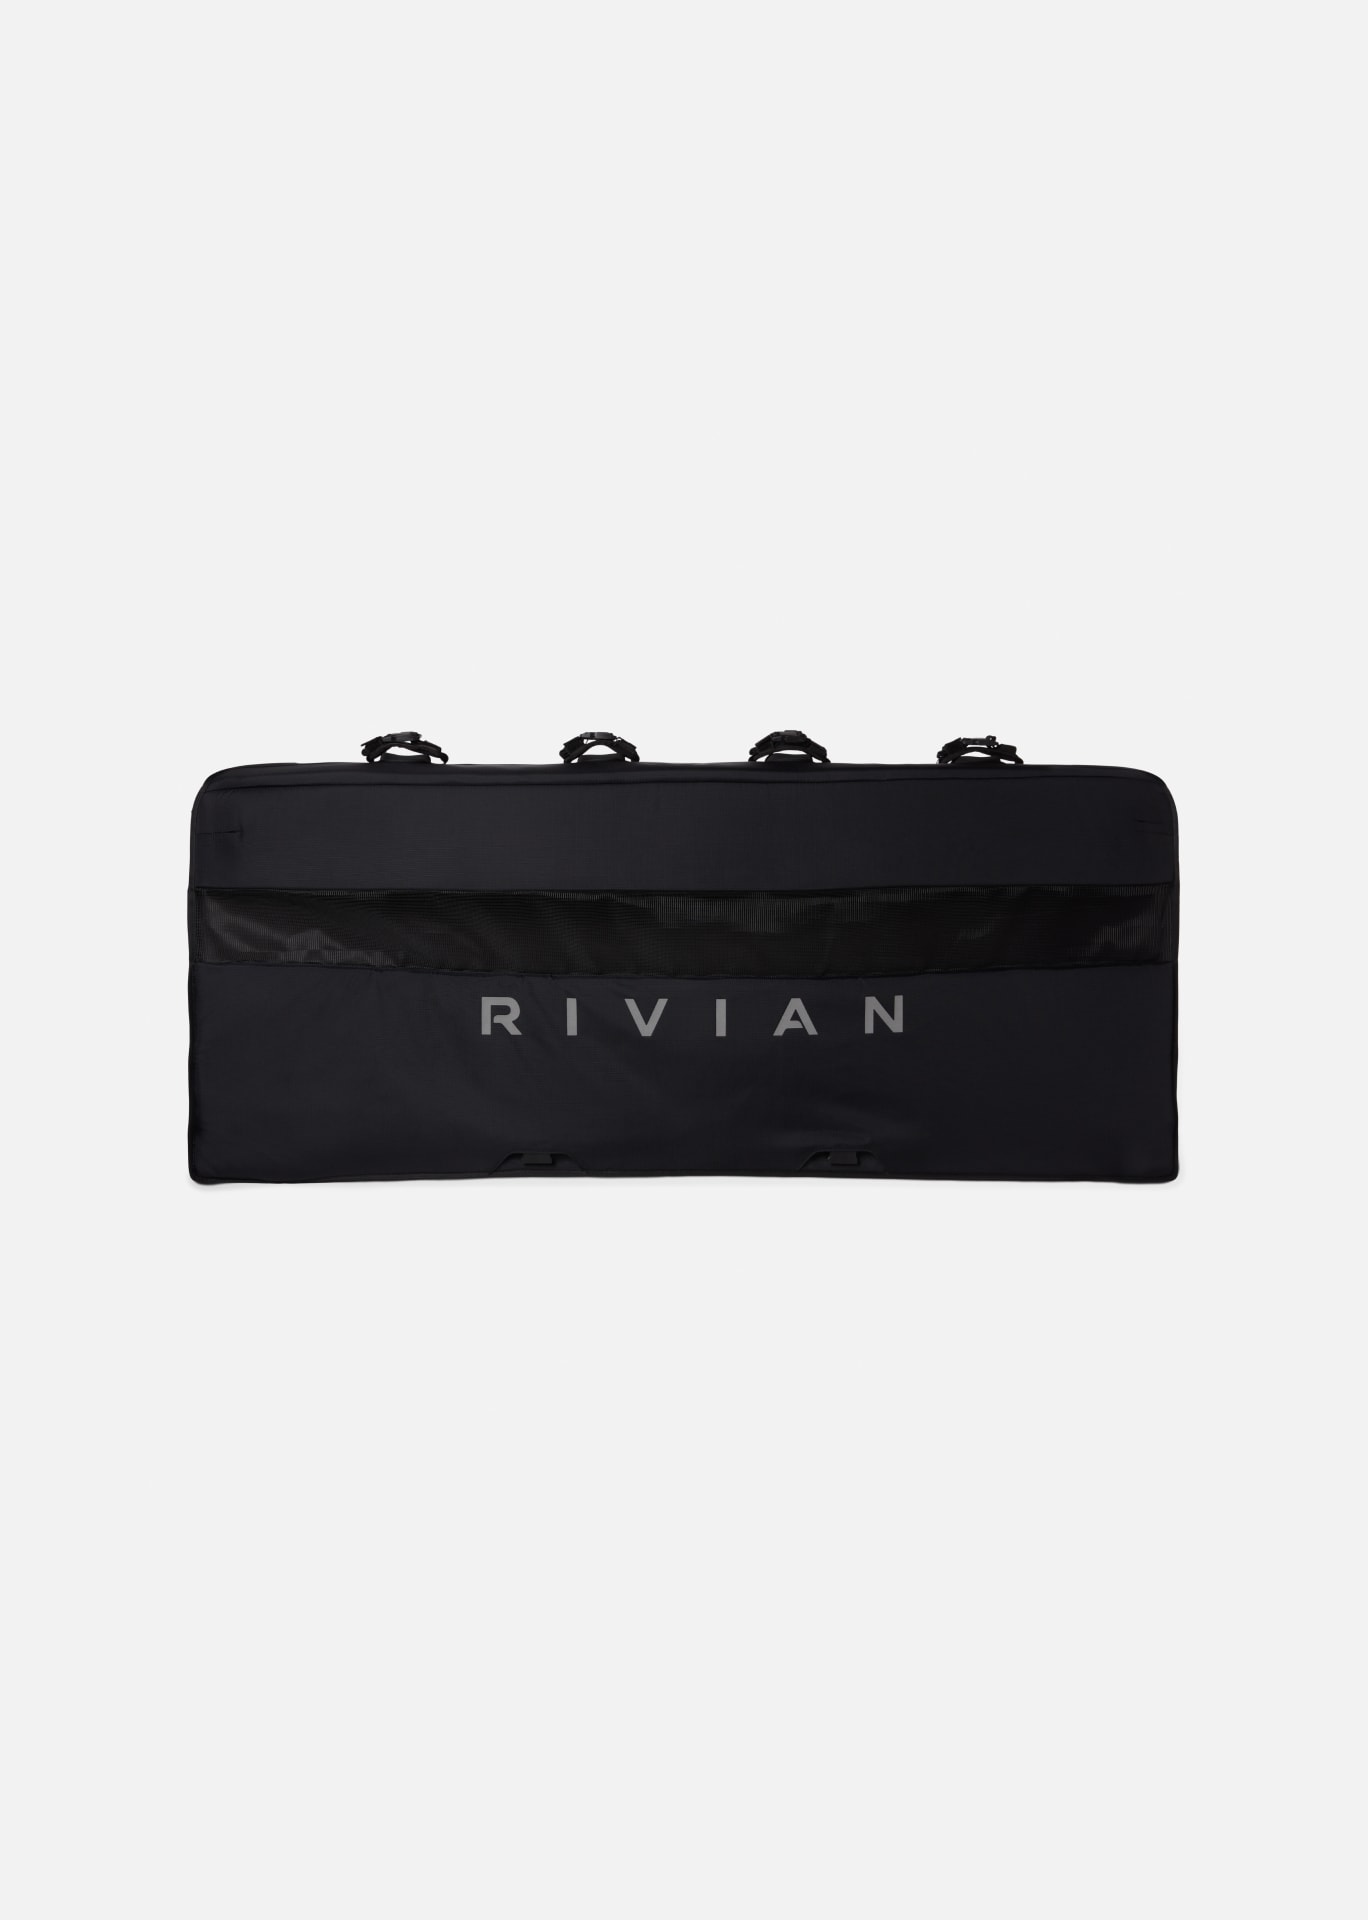 https://media.rivian.com/rivian-main/image/upload/f_auto,q_auto/v1/rivian-com/gearshop/R1T%20Tailgate%20Pad/Tailgate-Pad-Grid-Portrait-01_u1g7pz